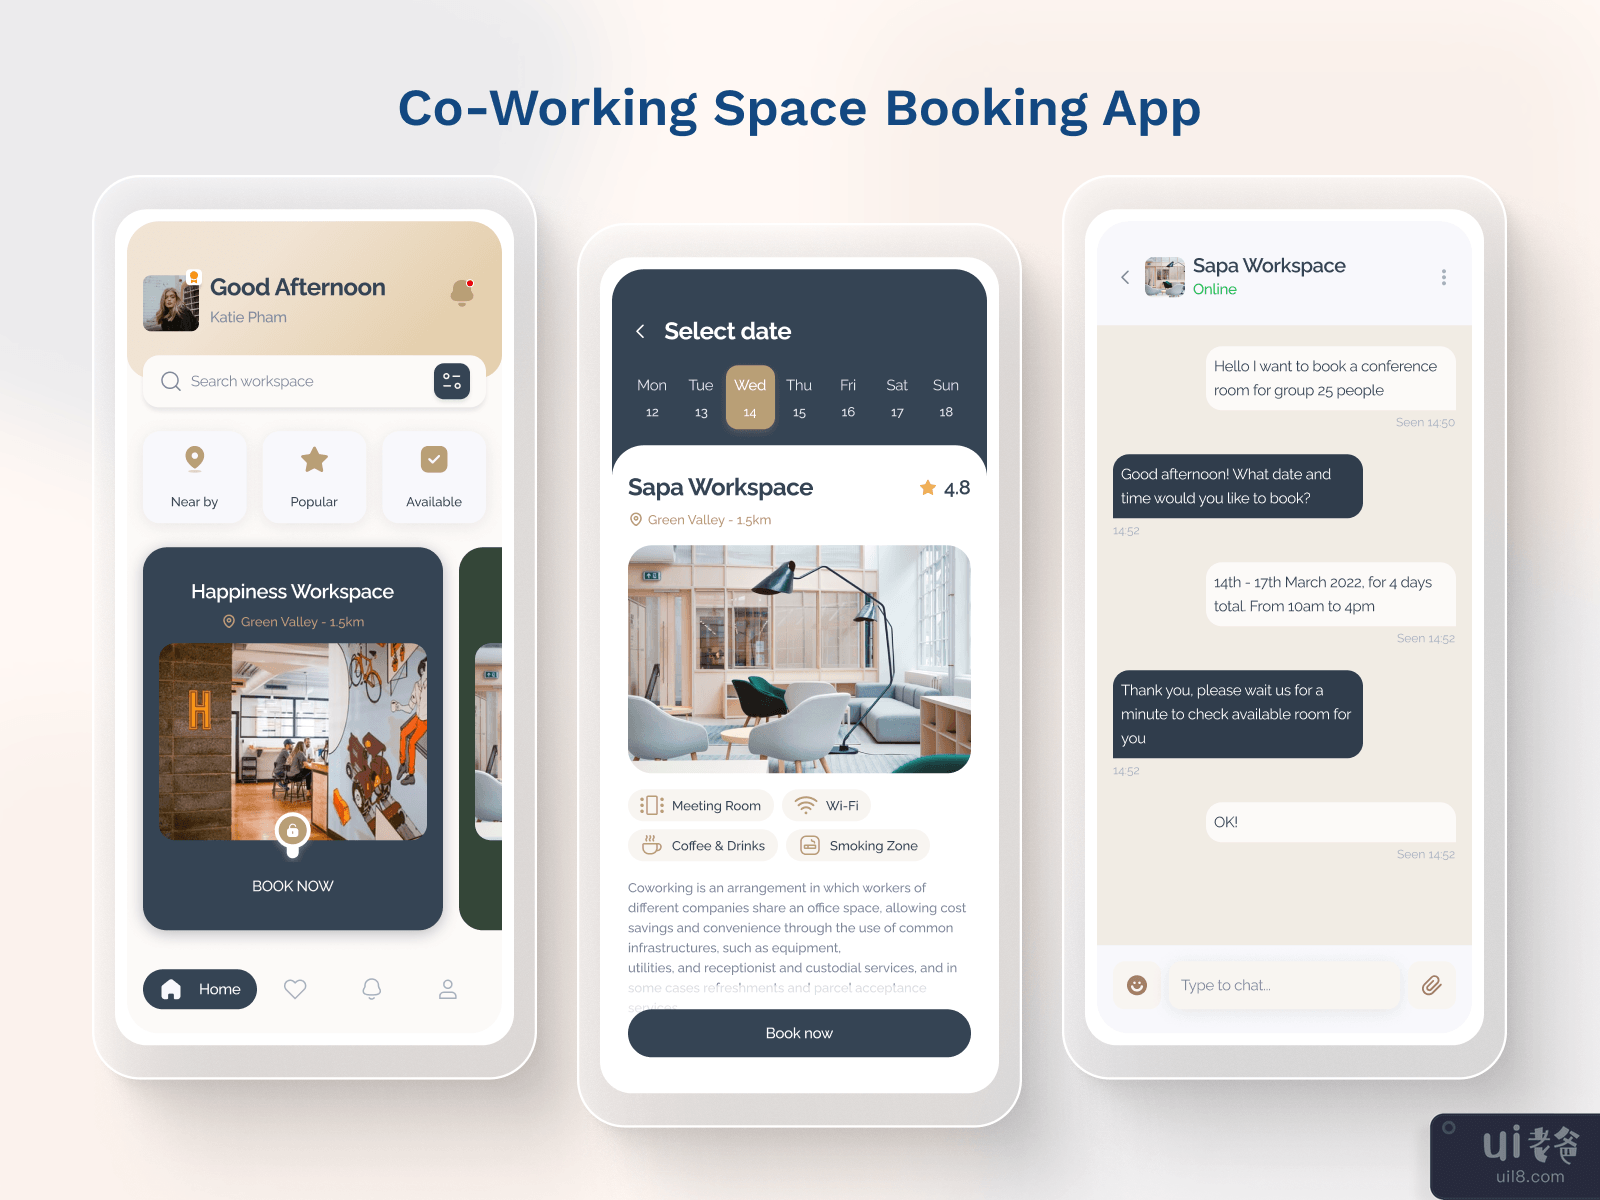 共享办公空间预订应用概念(Co-working Space Booking App Concept)插图